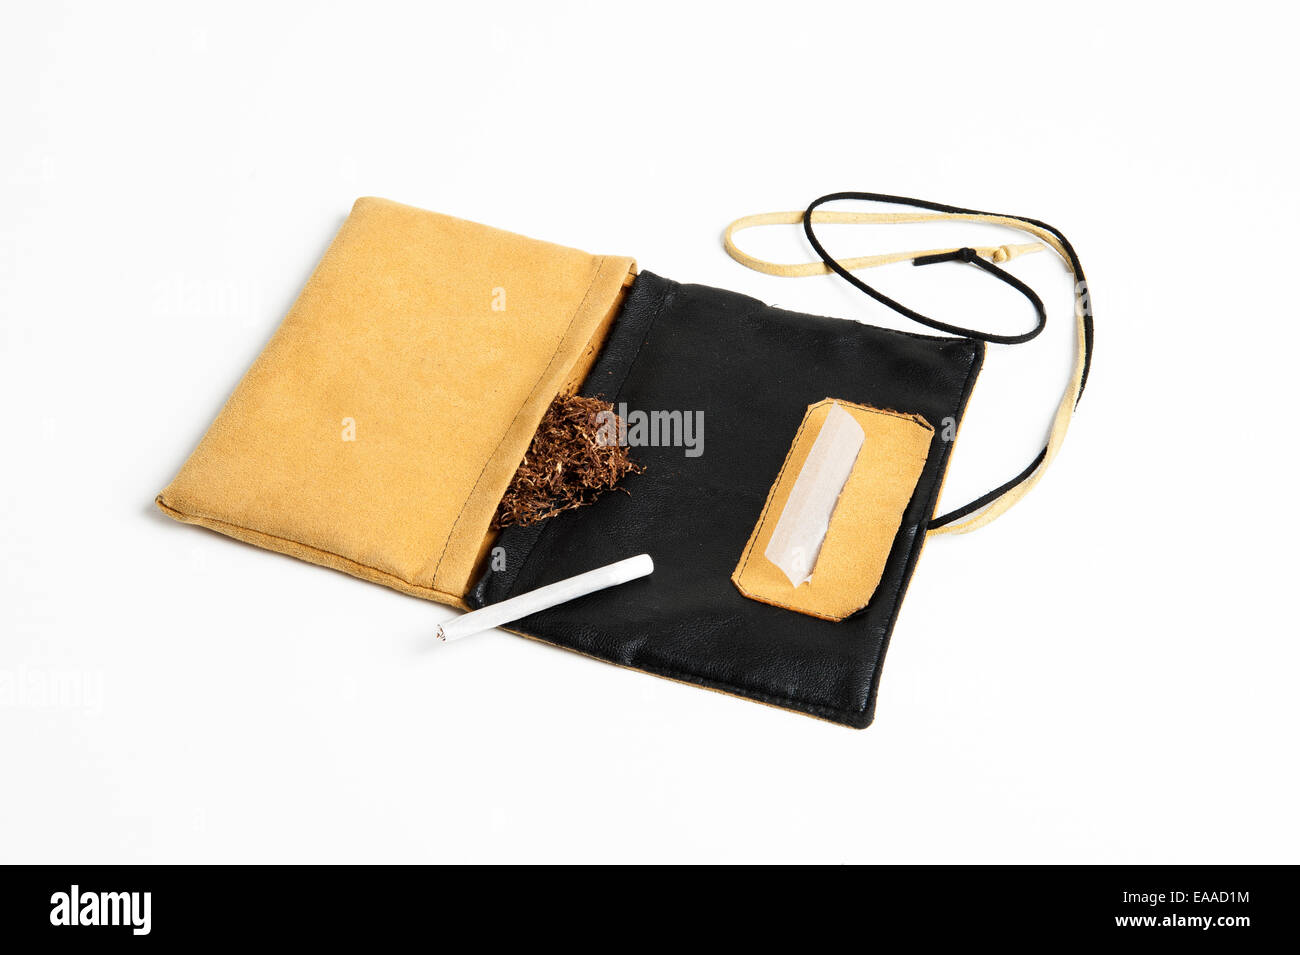 Tabak, Filter, Zigarettenpapier und fertigen handgemachte Zigarette, mit einem gelben Tabak Geldbeutel auf weißen Hintergrund isoliert Stockfoto